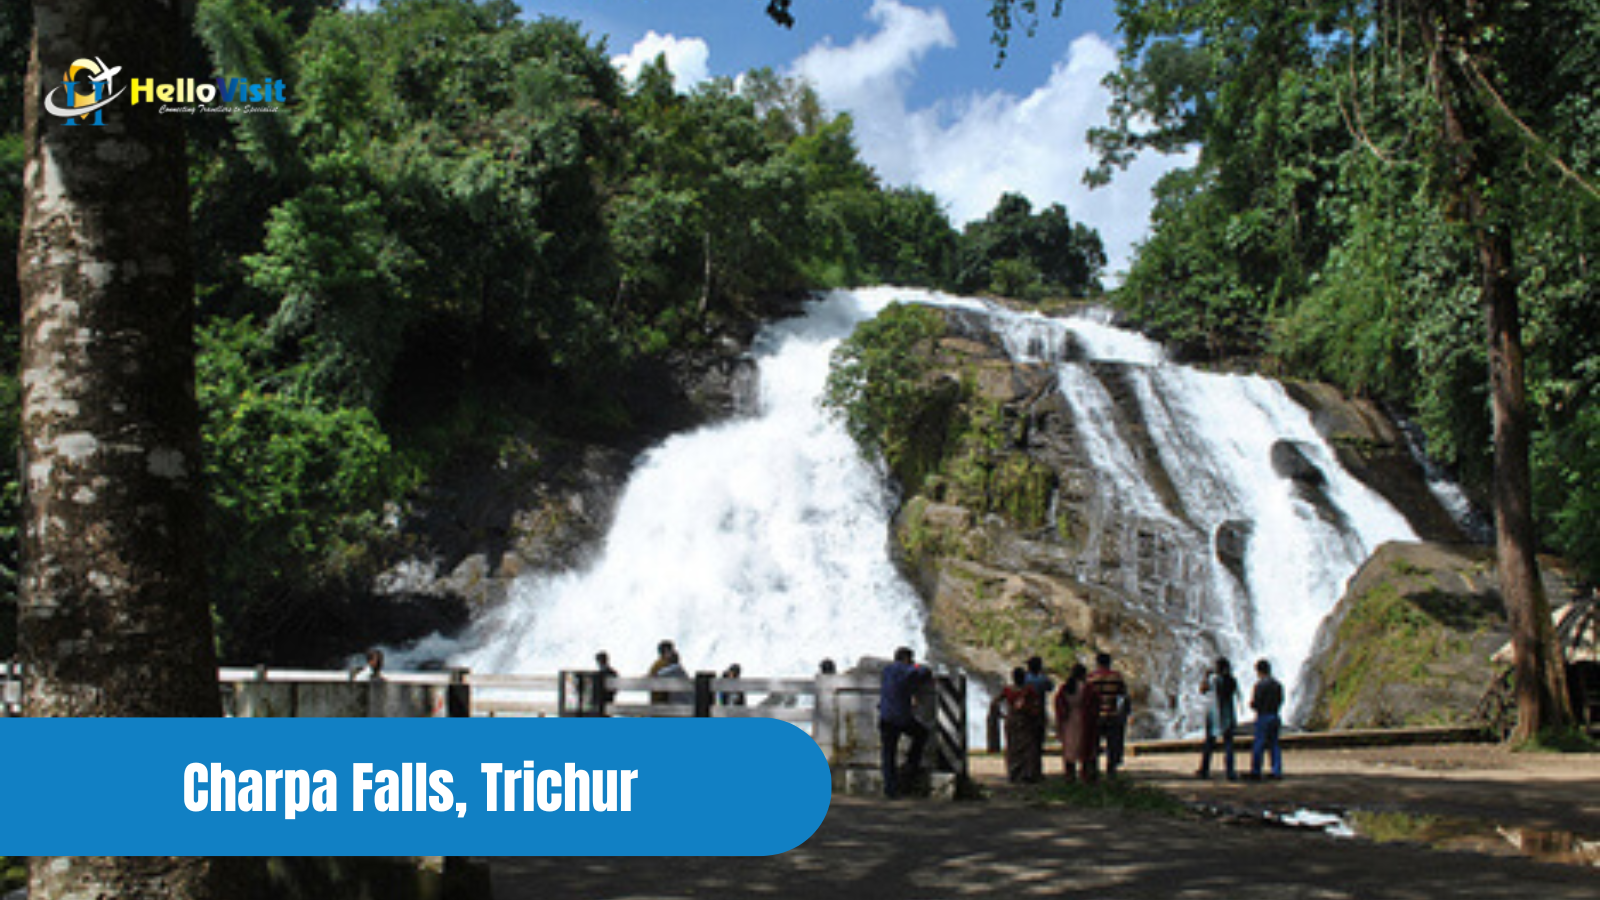 Charpa Falls, Trichur